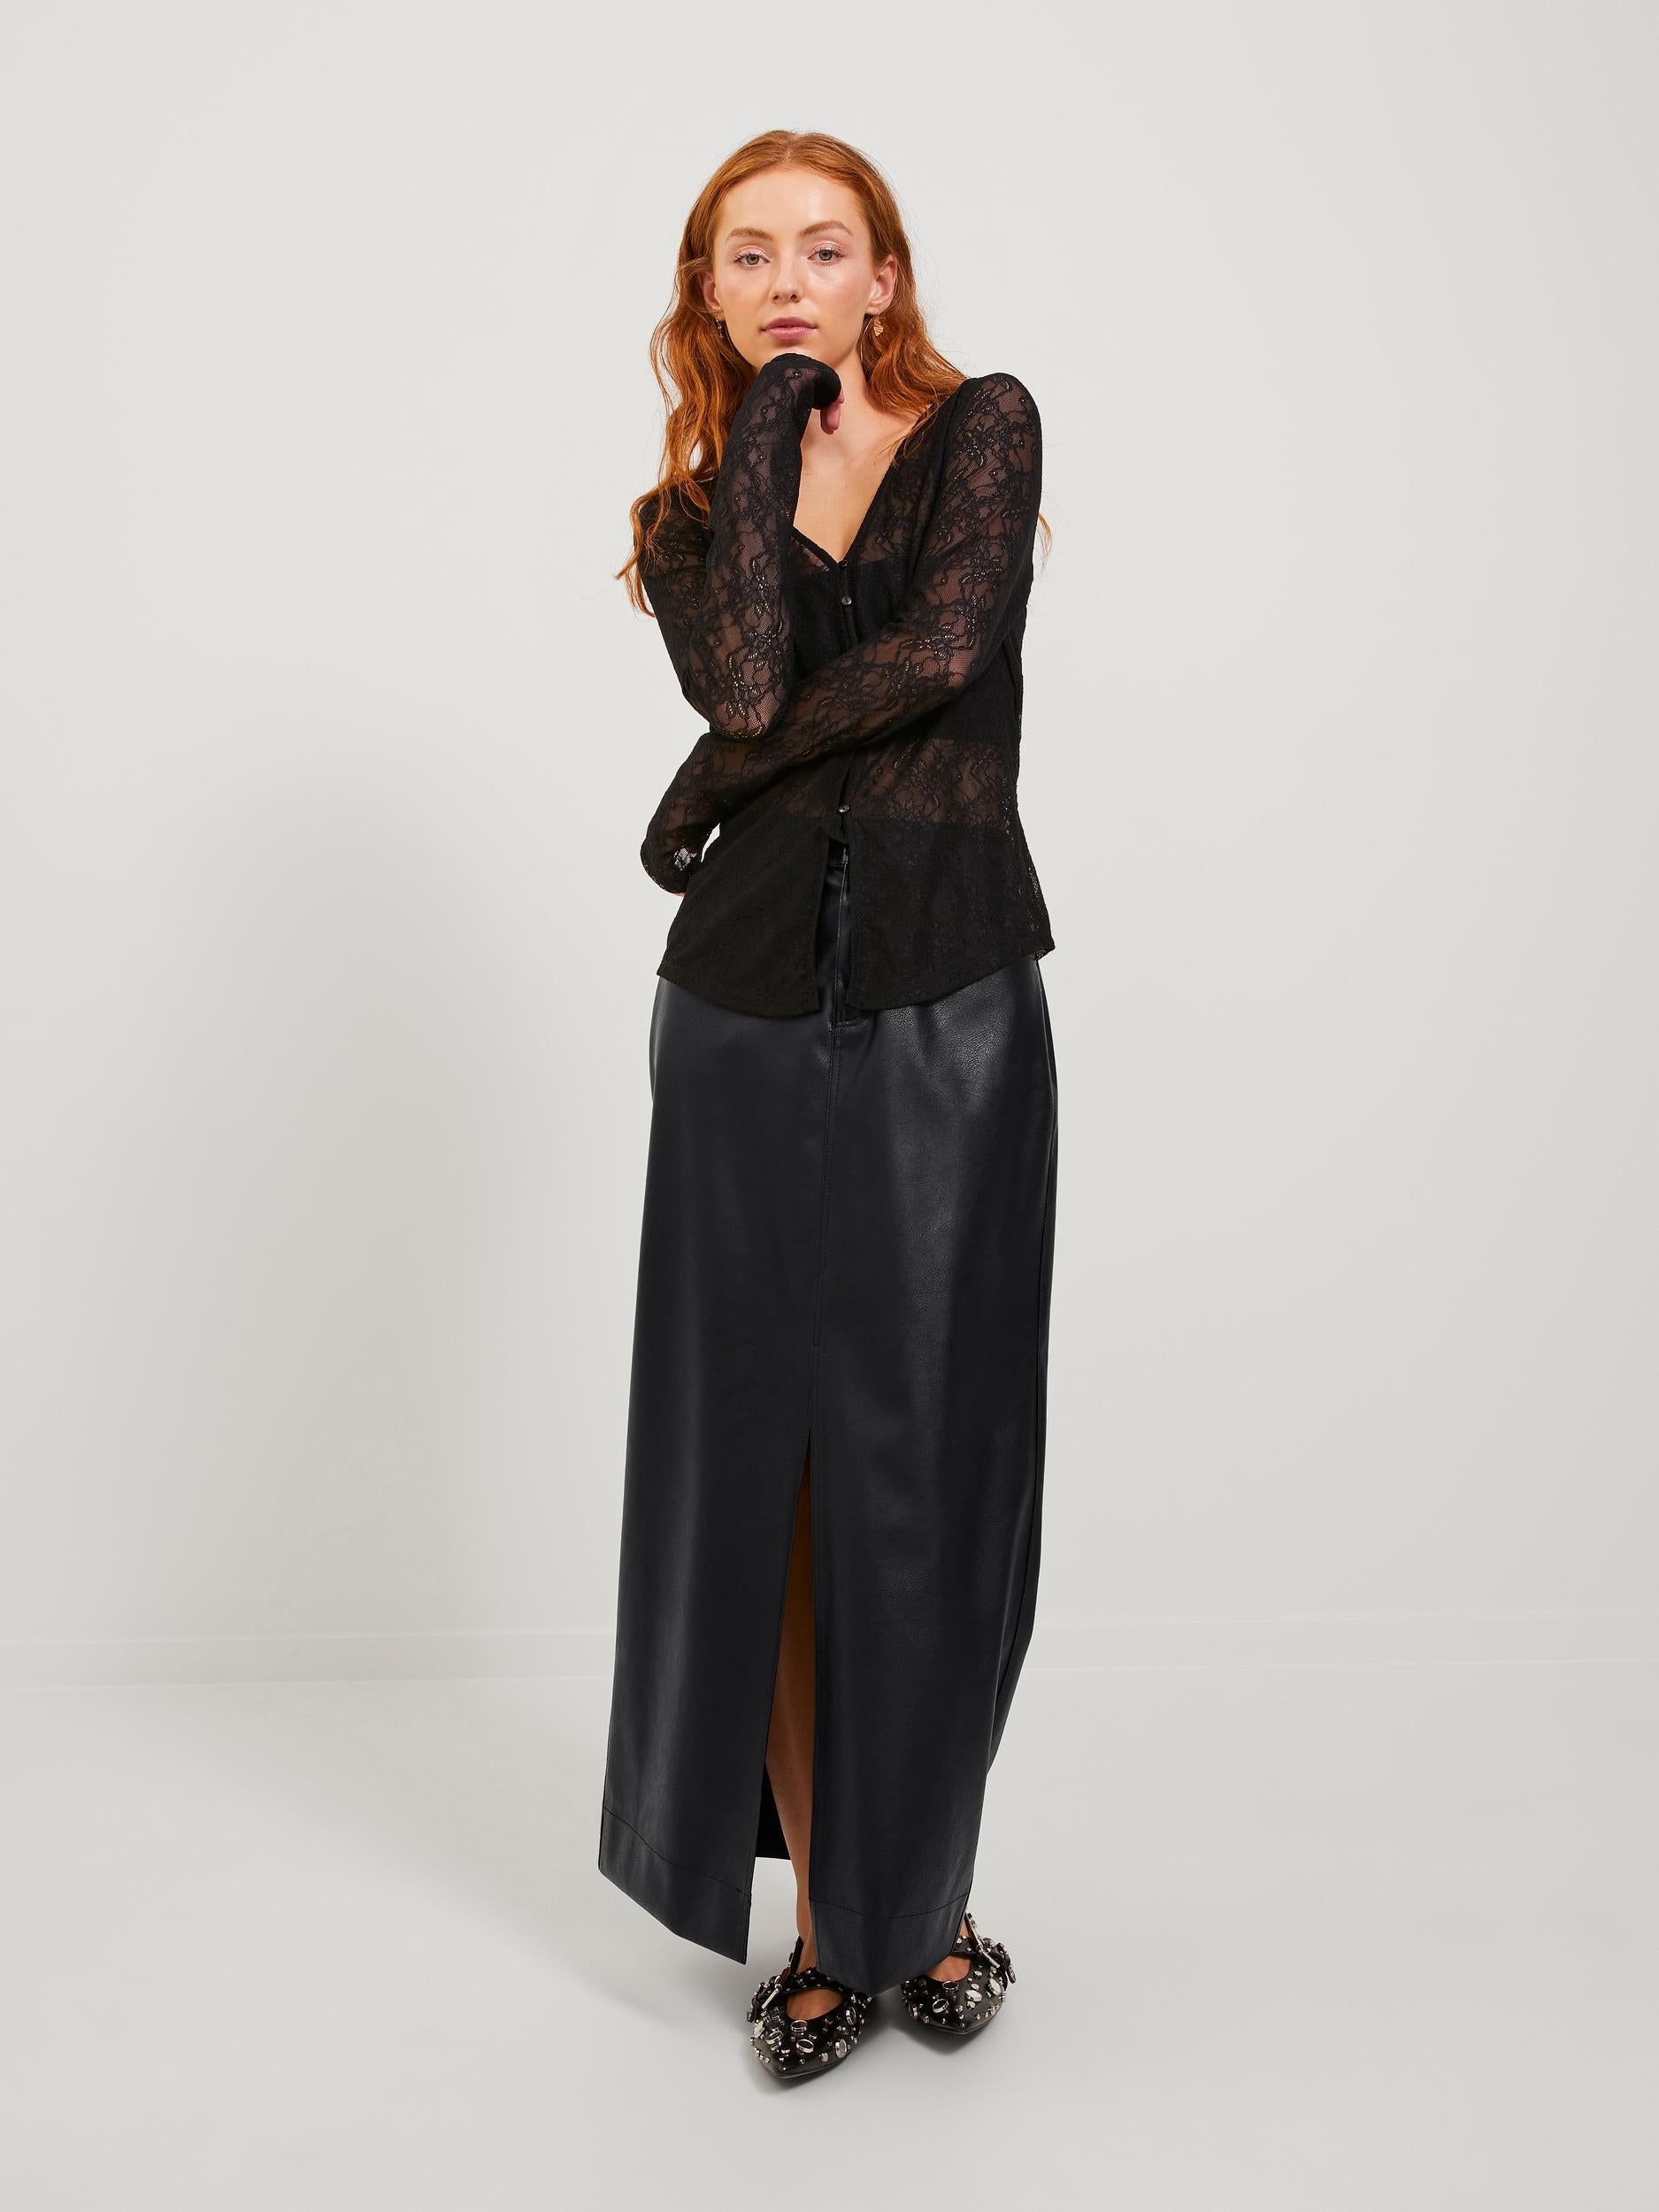 Elva Long Faux Leather Skirt Black